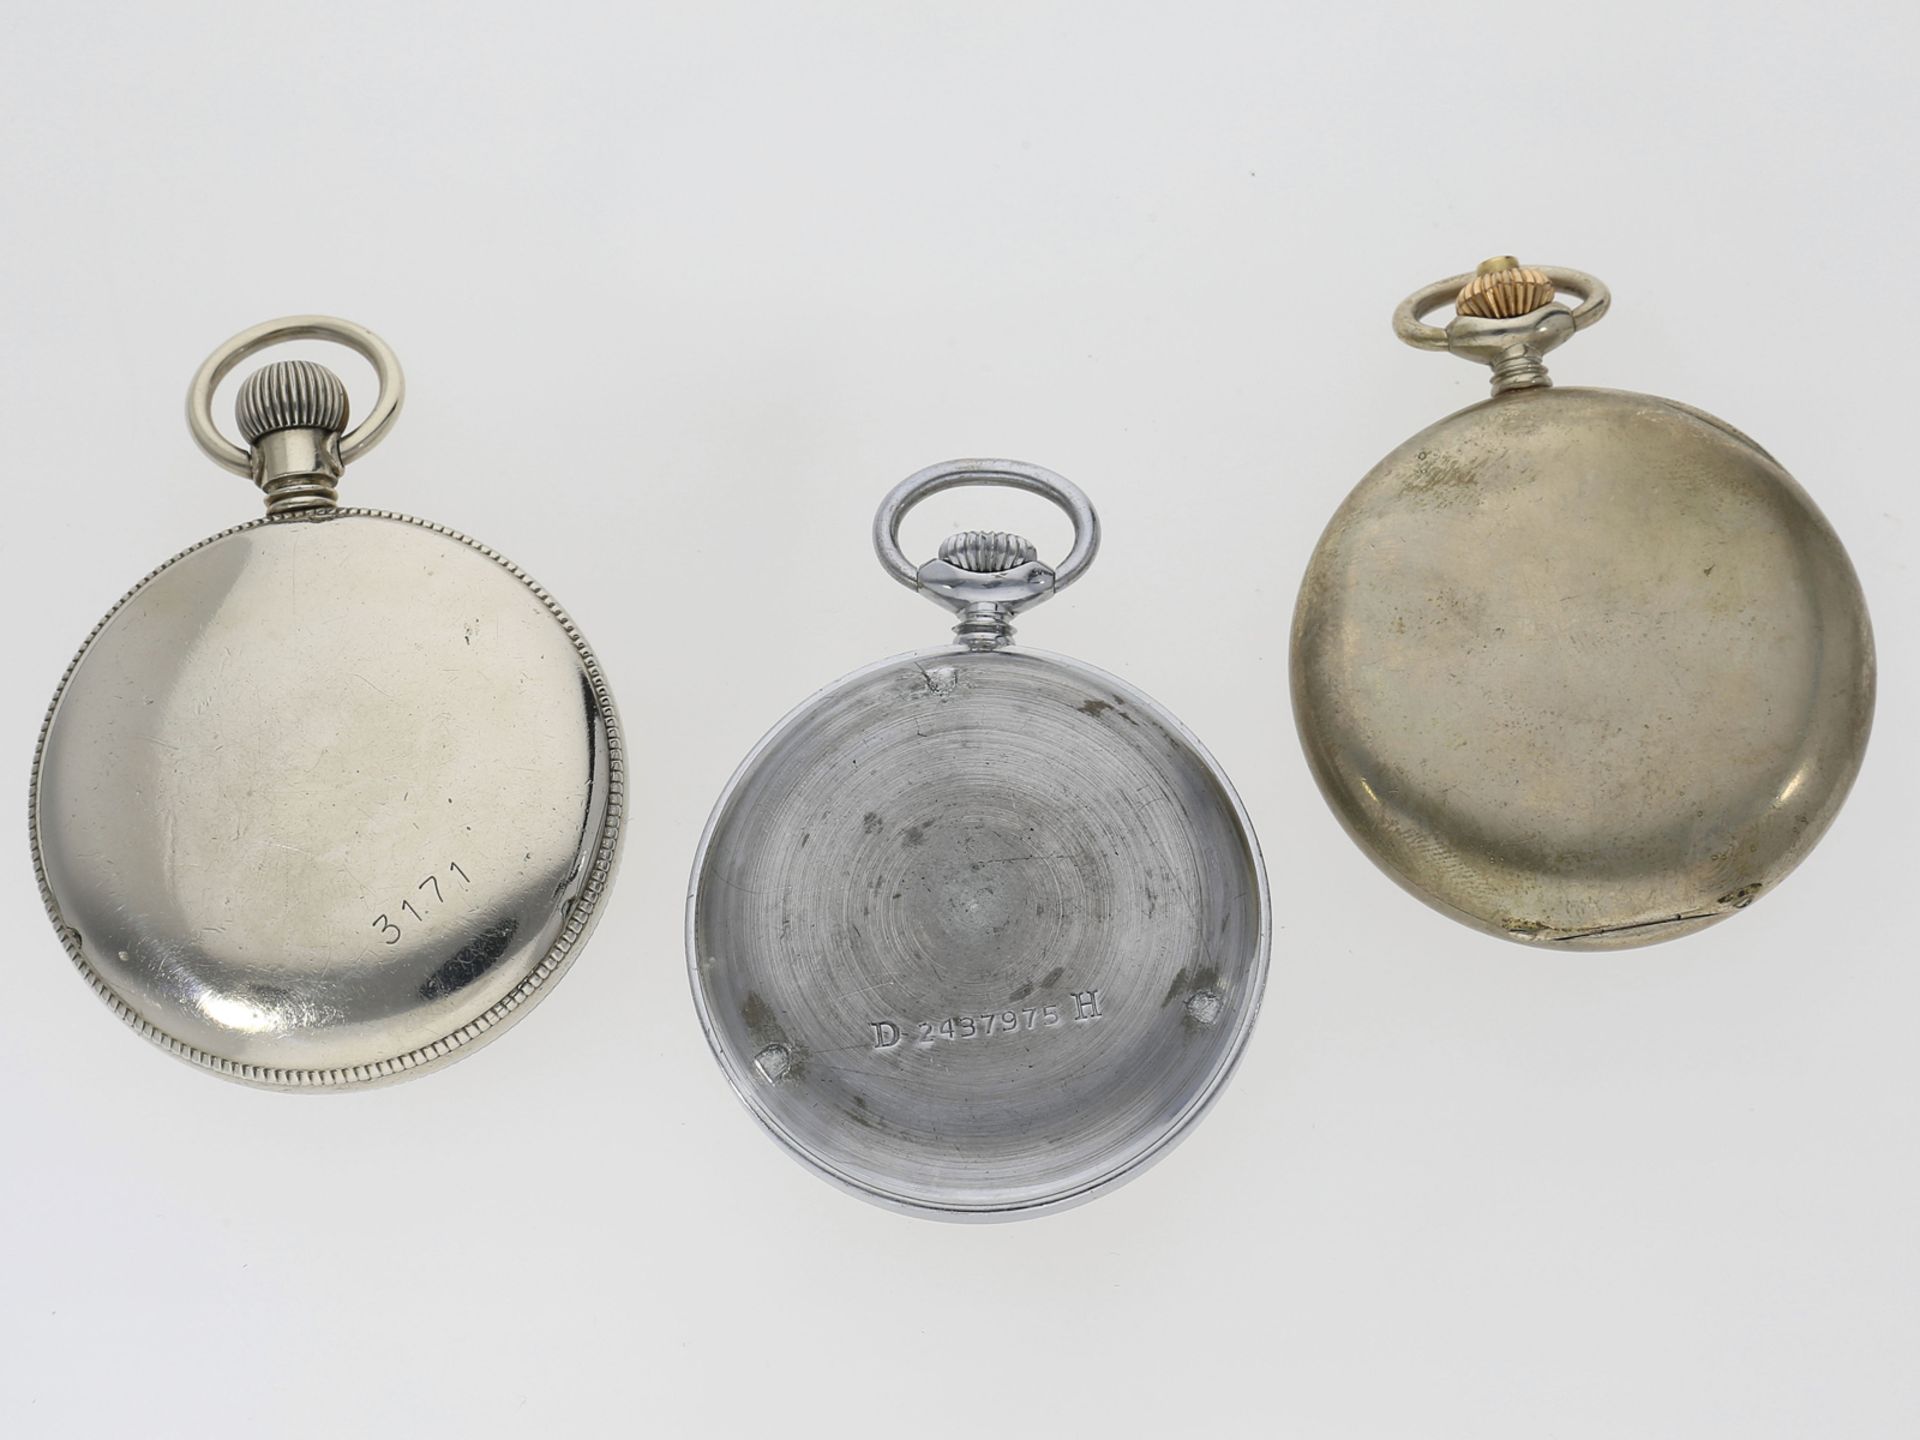 Taschenuhr: Konvolut von 3 seltenen, deutschen militärischen Taschenuhren, dabei ein Chronograph Lün - Bild 2 aus 3